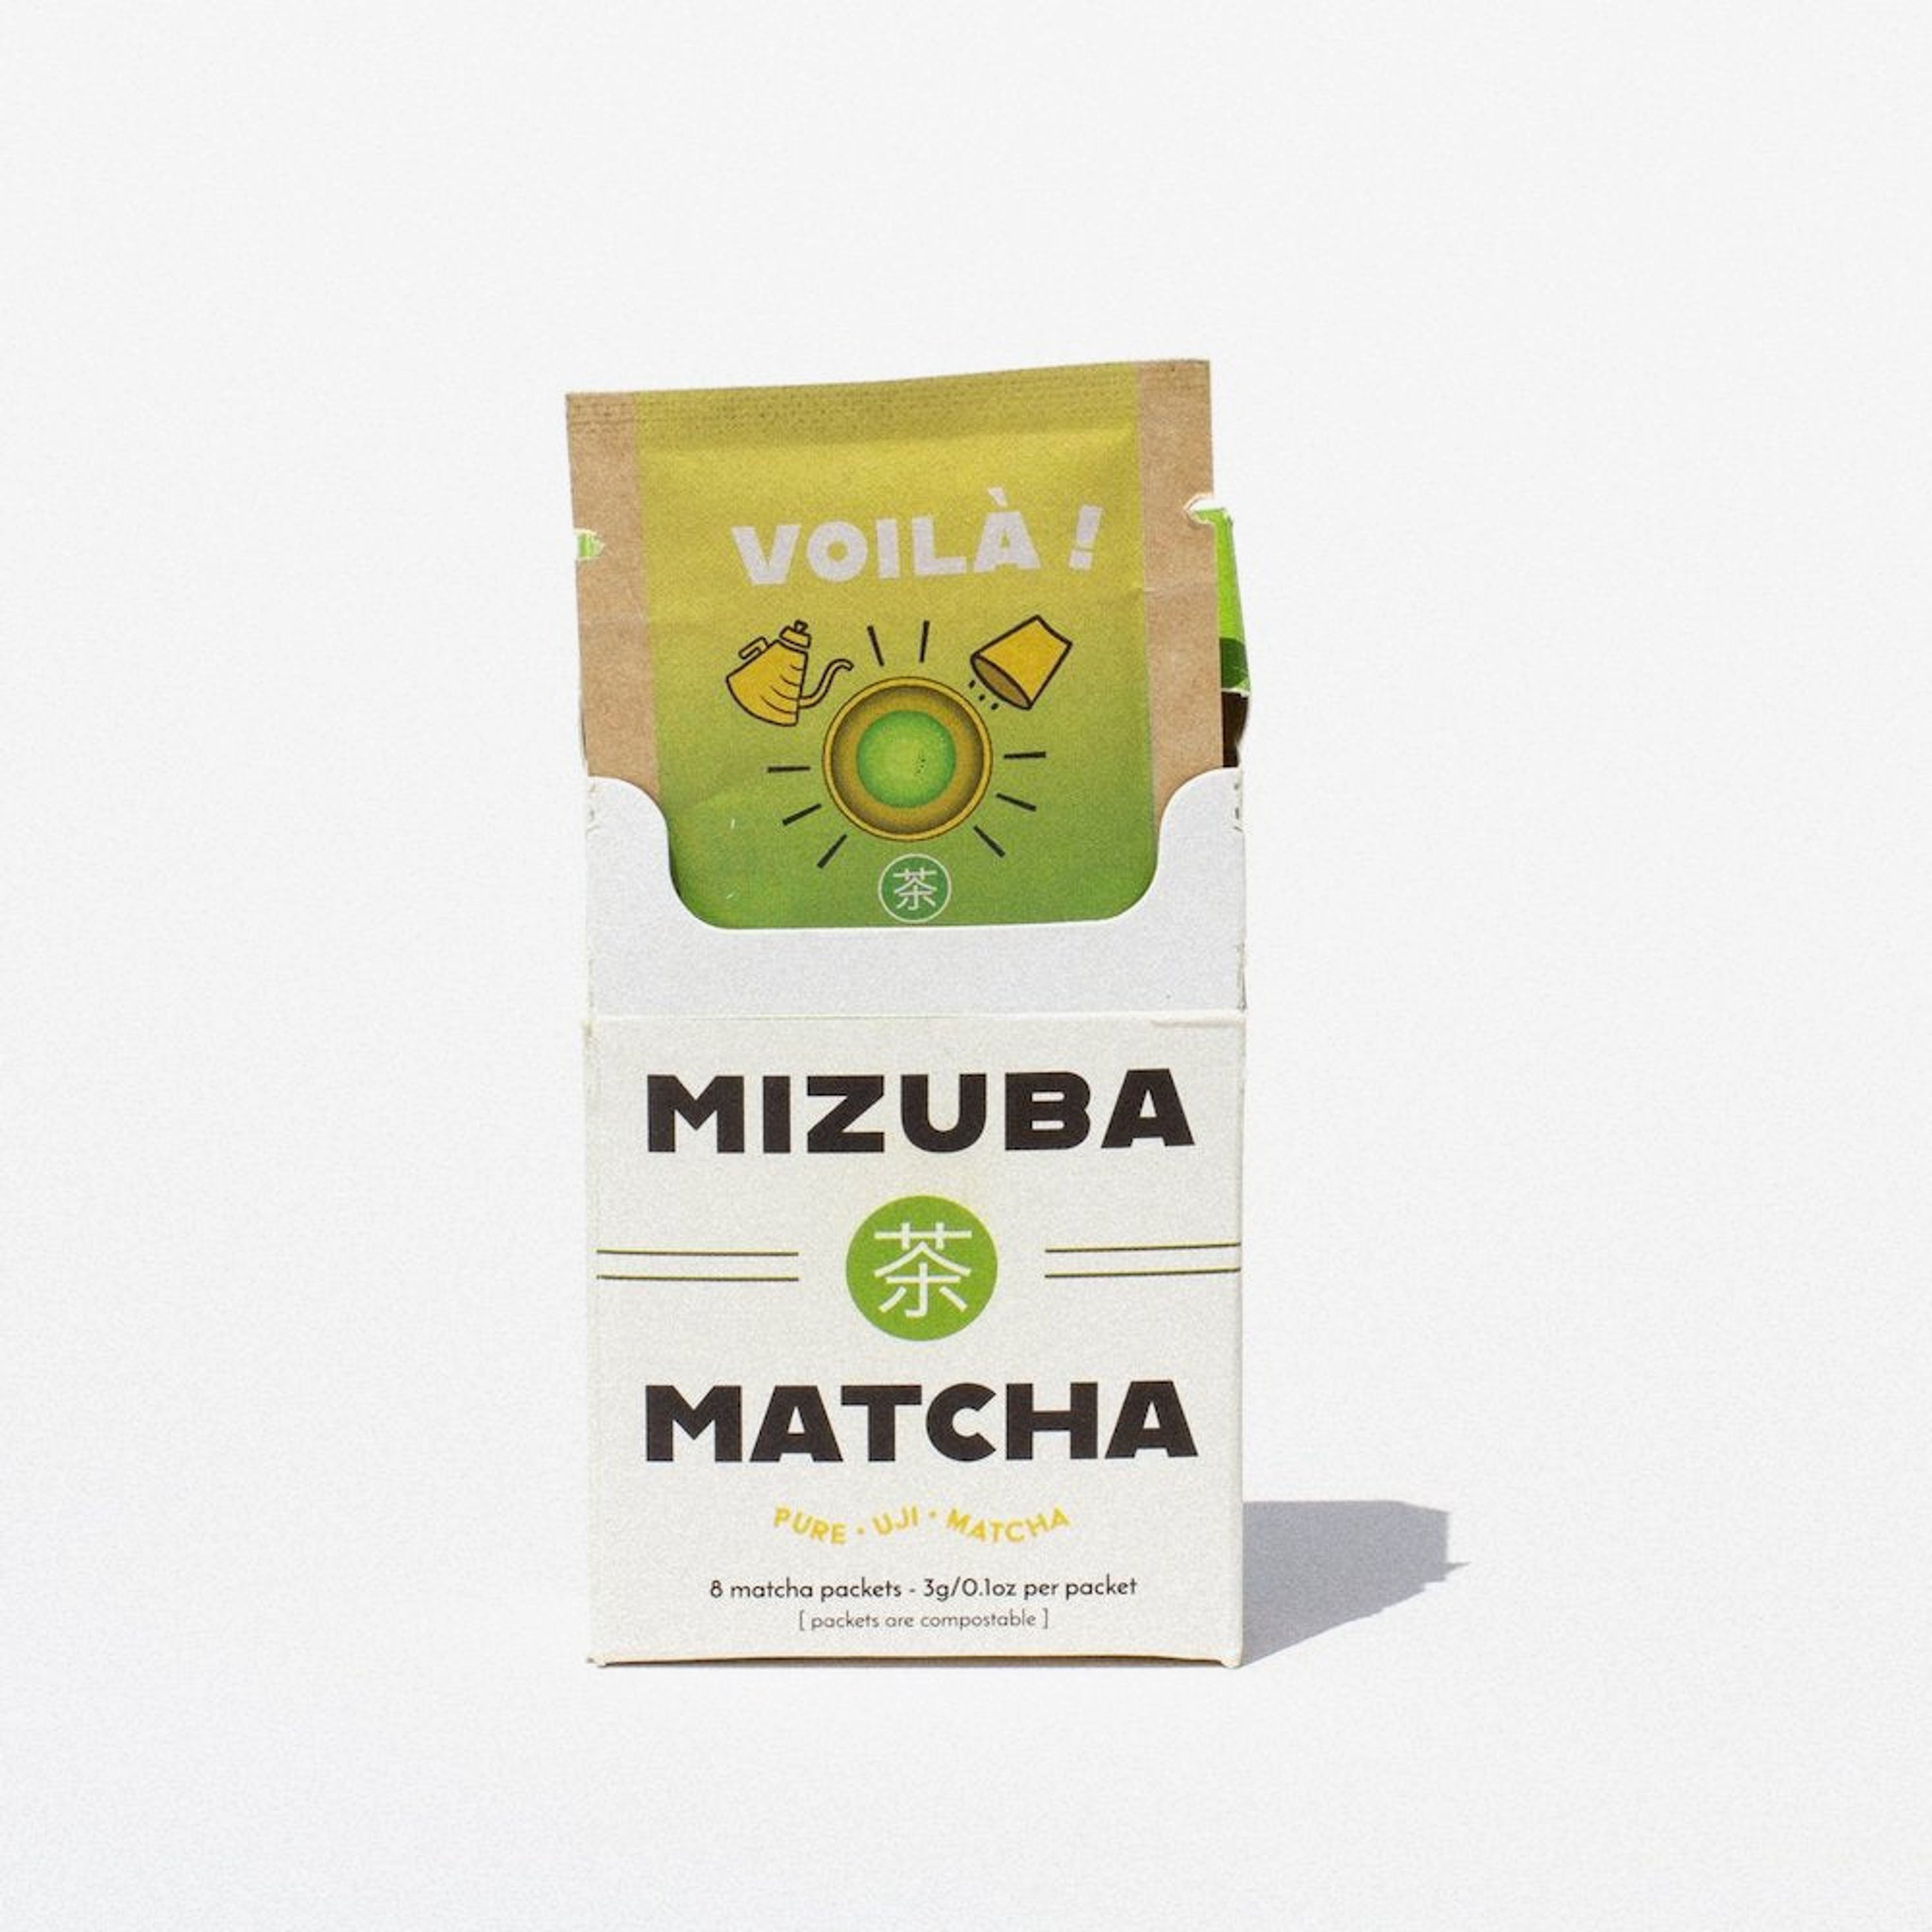 Voilà! Travel Mizuba Matcha || Eco Single-Serve Packs.